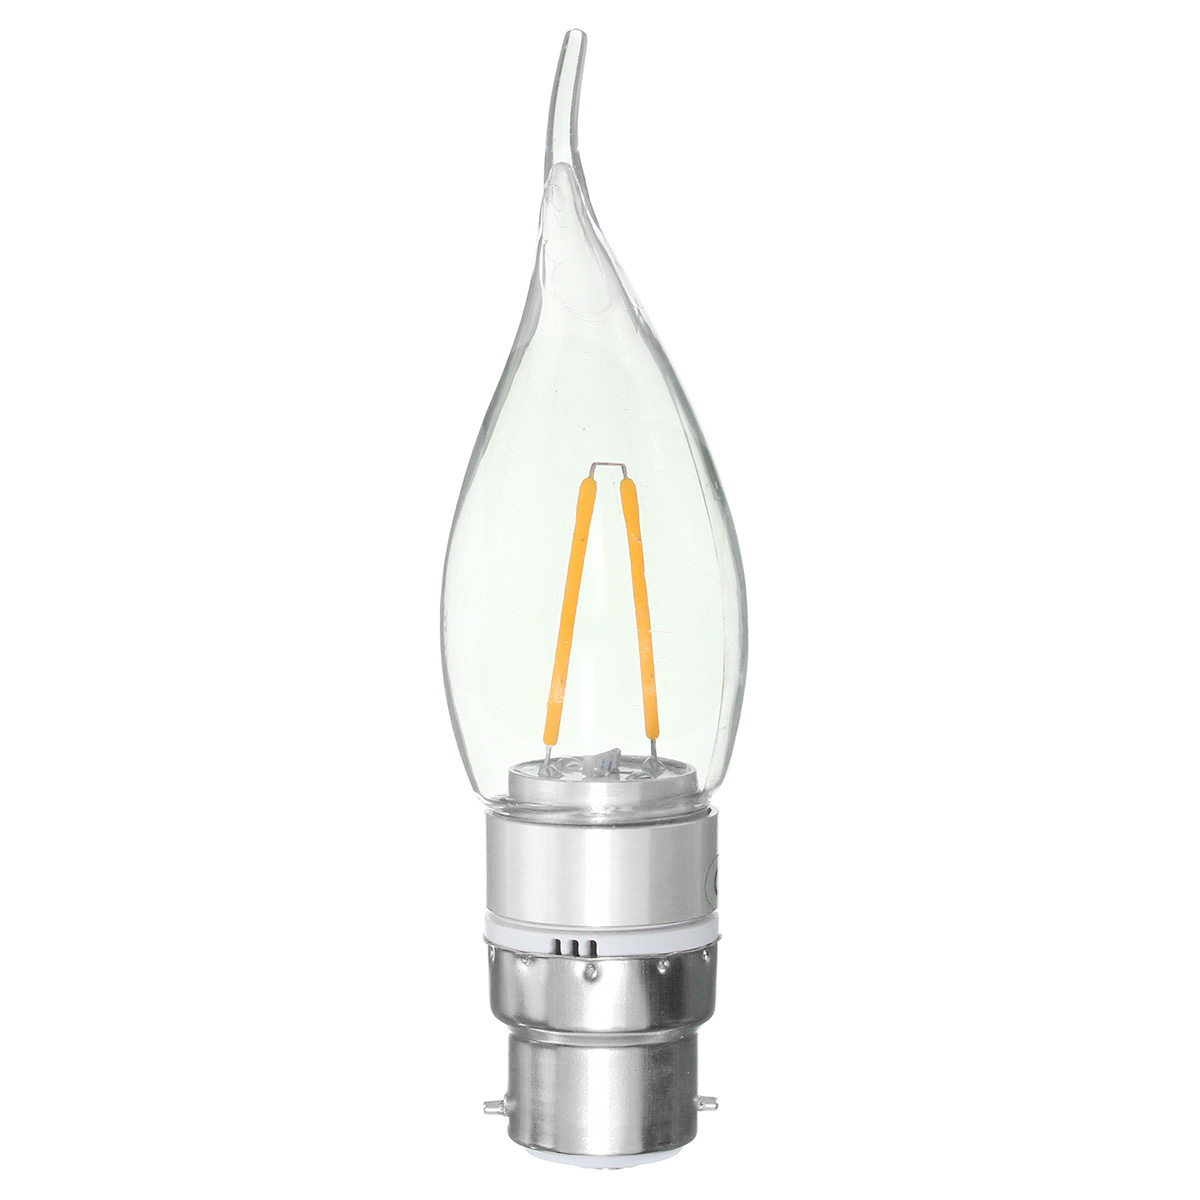 E27-E14-E12-B22-B15-2W-Non-Dimmable-Sliver-Edison-Pull-Tail-Incandescent-Candle-Light-Bulb-110V-1135833